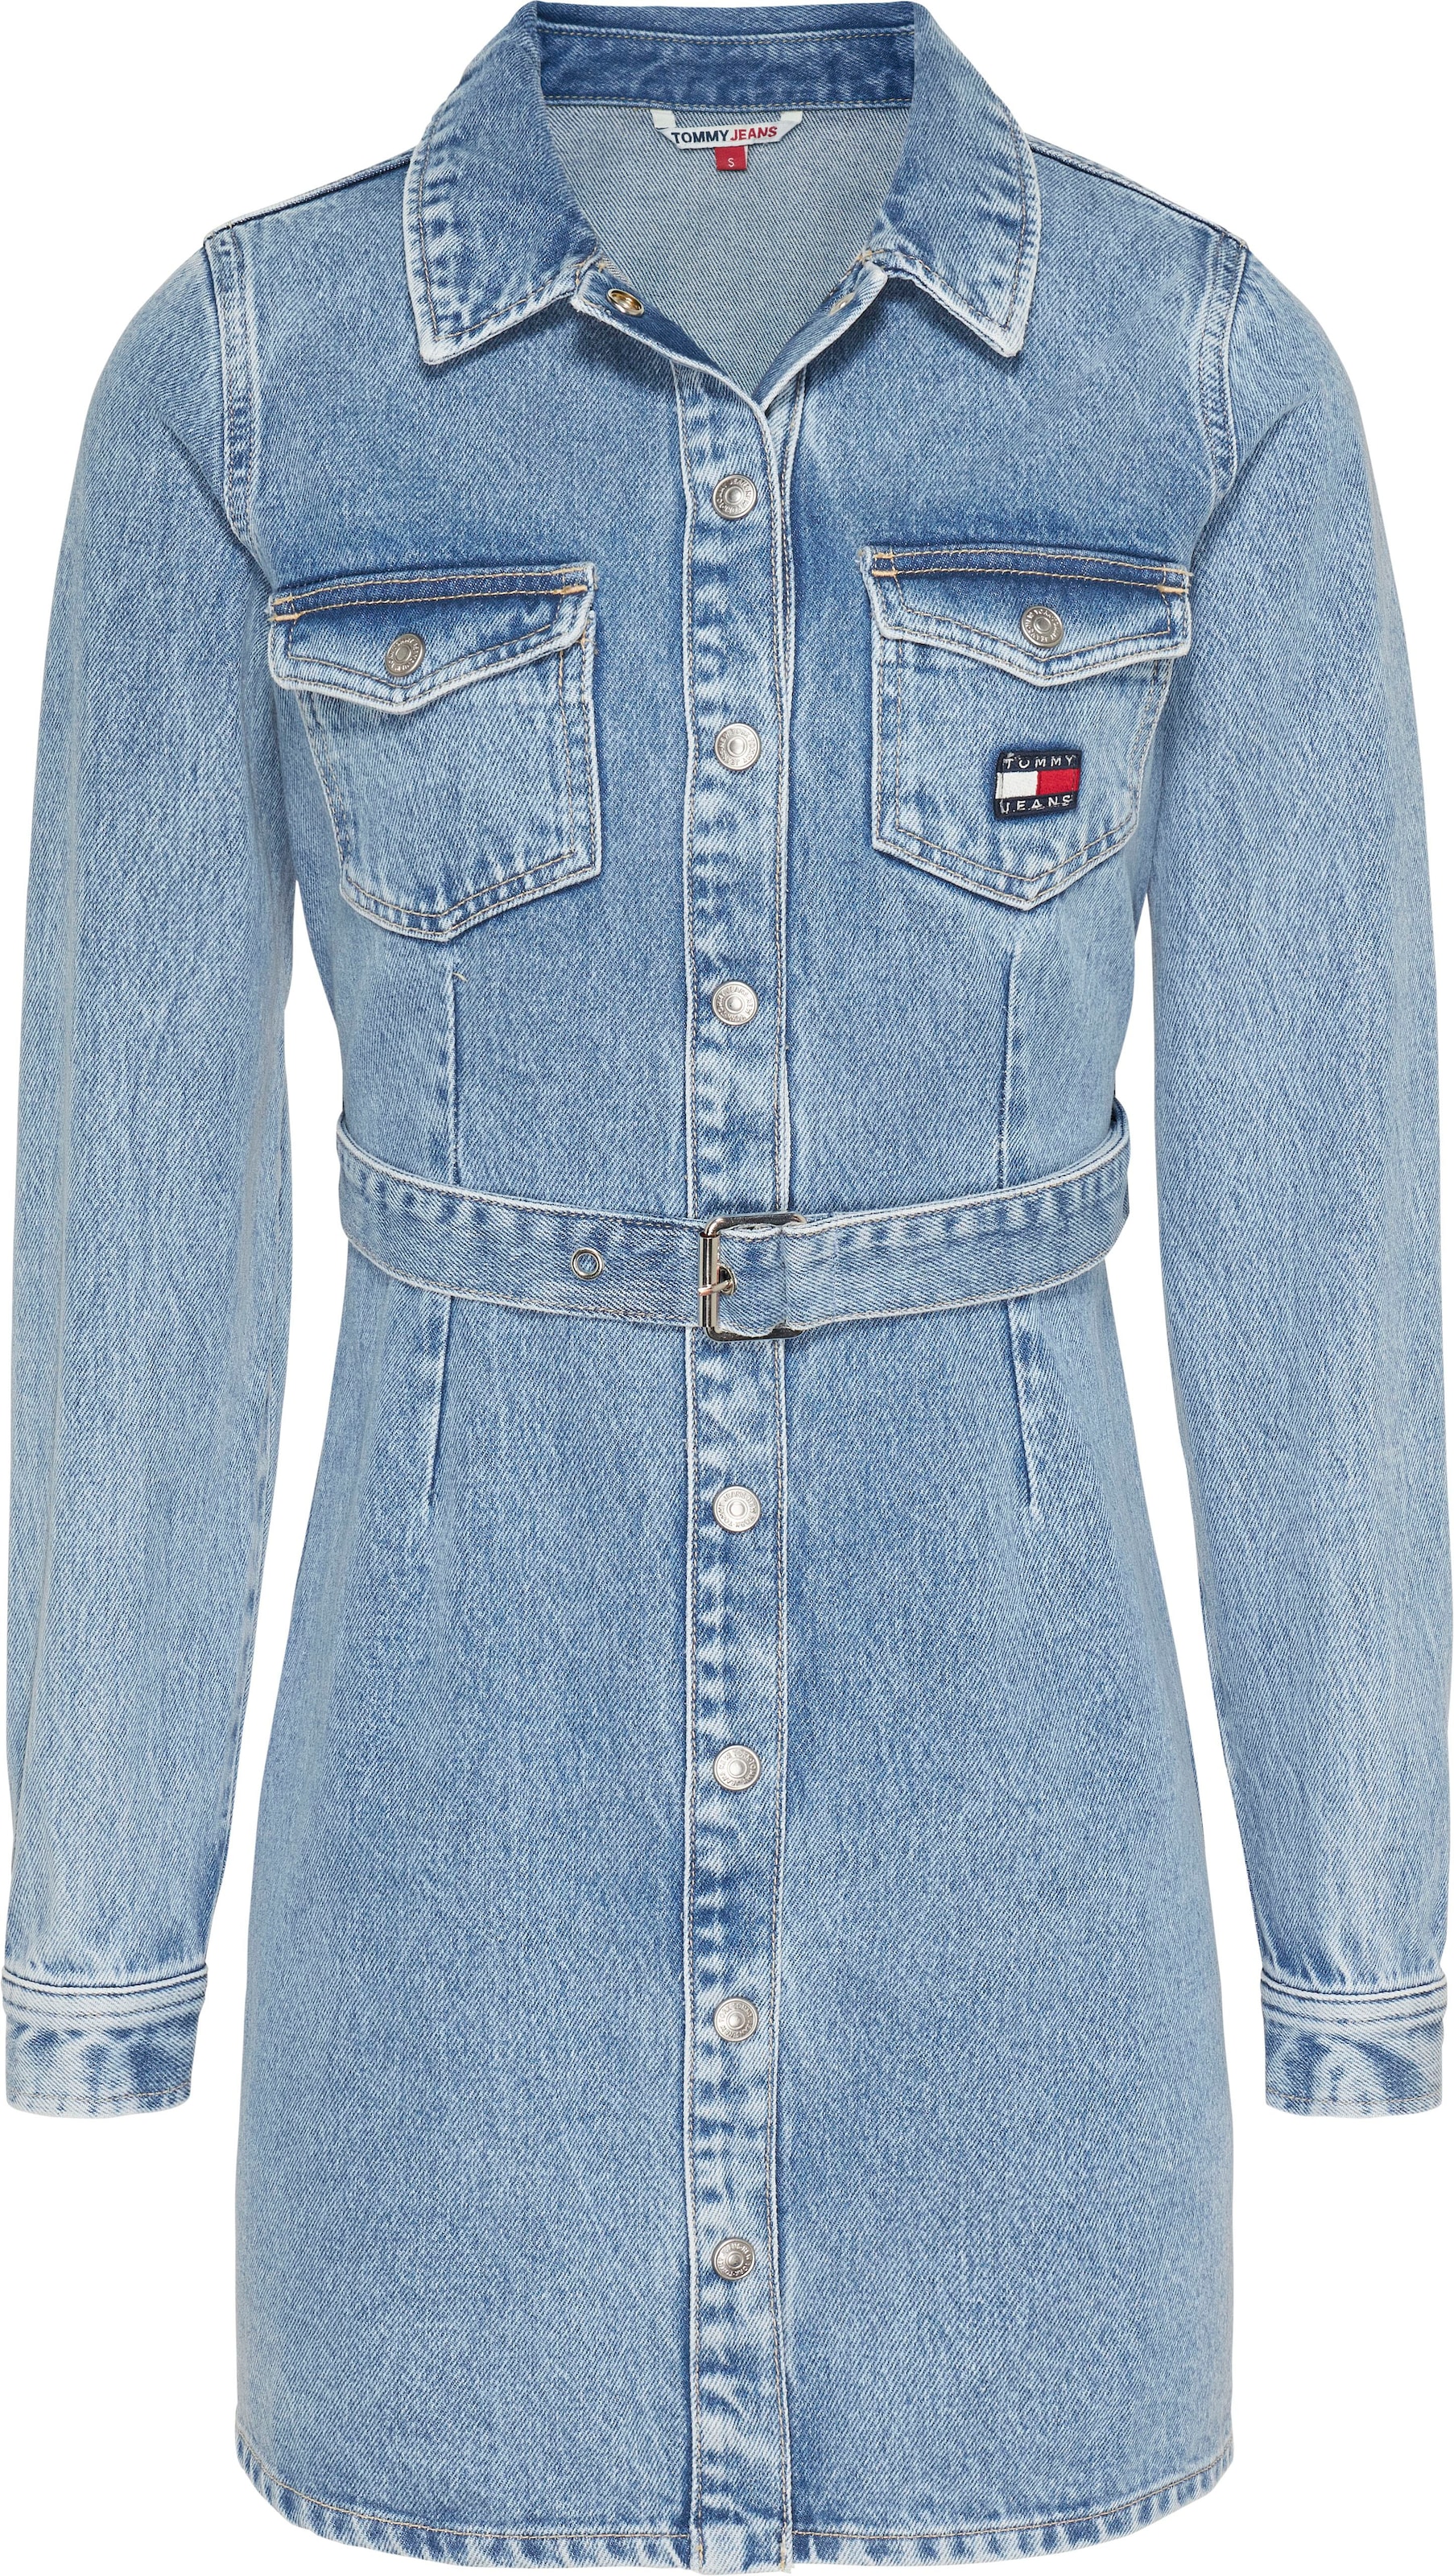 Tommy Jeans Jeanskleid »SLIM BELTED LS DRESS DG7012«, (2 tlg.), Mit Tommy Jeans Markenlabel